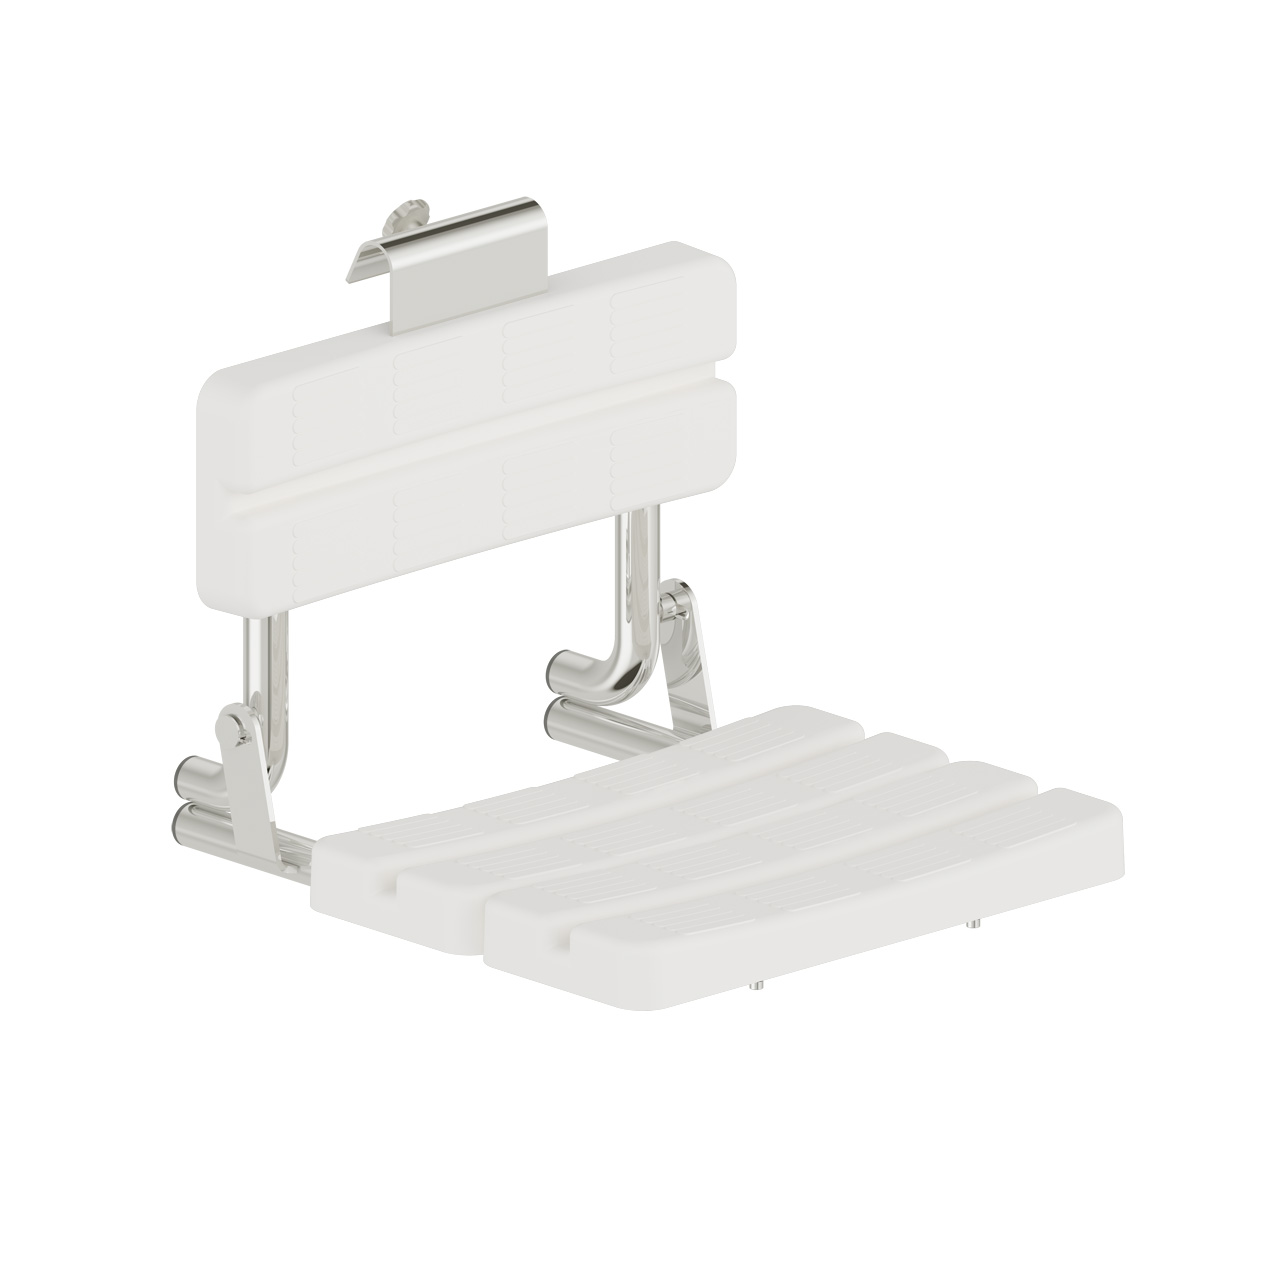 Foto - Duschsitz, Edelstahl glatt poliert, Sitz und Lehnen Kunststoff weiß, zum Einhängen - Artikel L1223100 - Serie Funktion von Lehnen